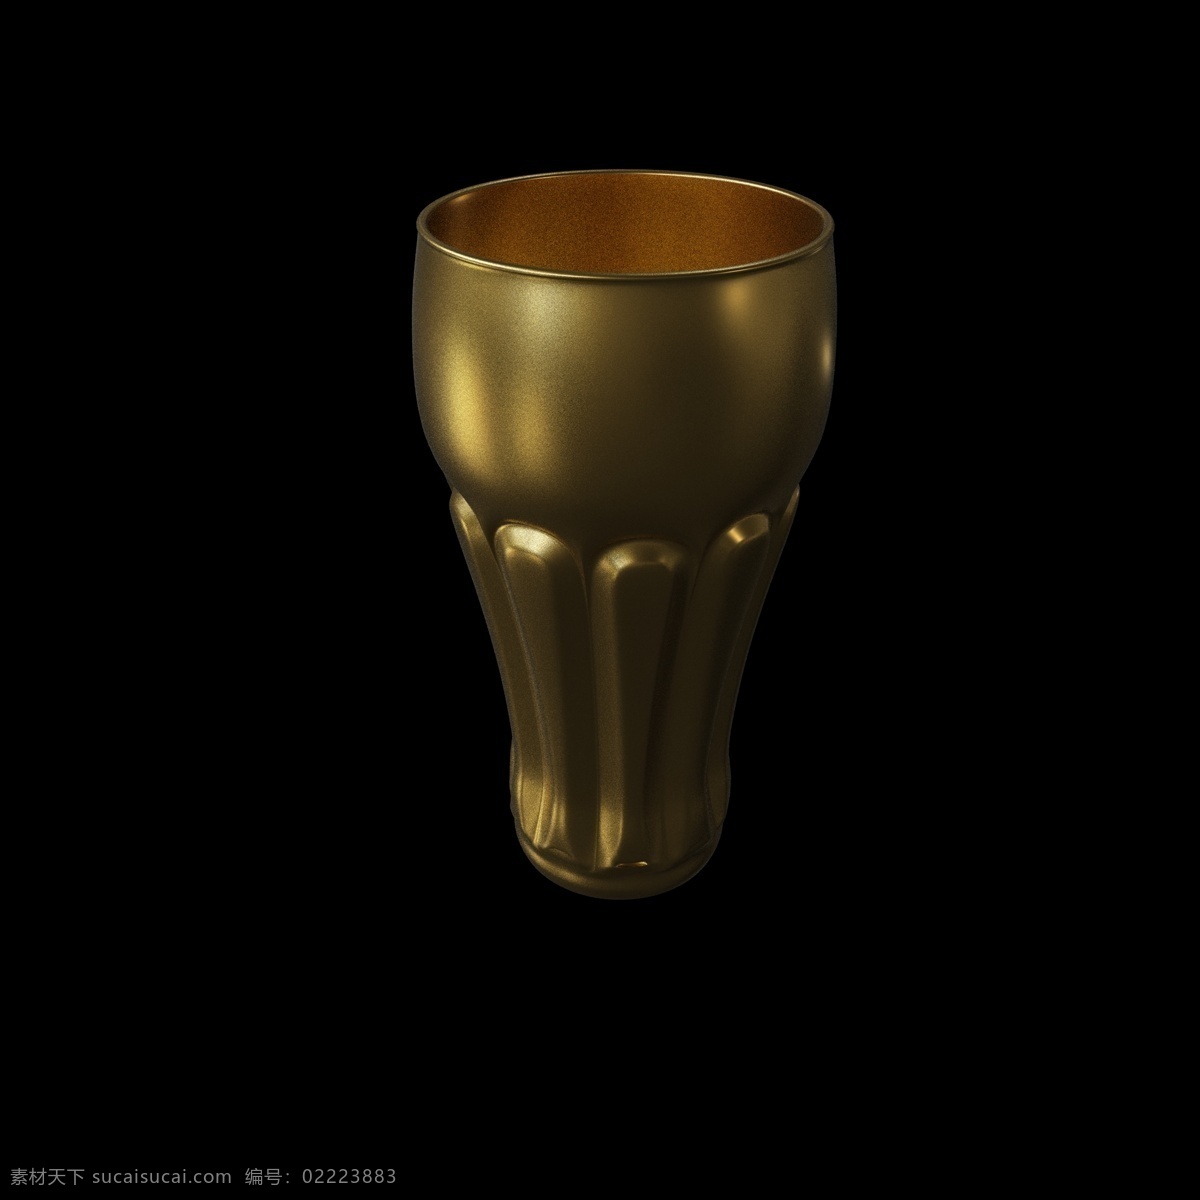 金色 立体 艺术 杯子 立体杯子 金色立体杯子 美感 创意 c4d 现代风装饰 海报插图